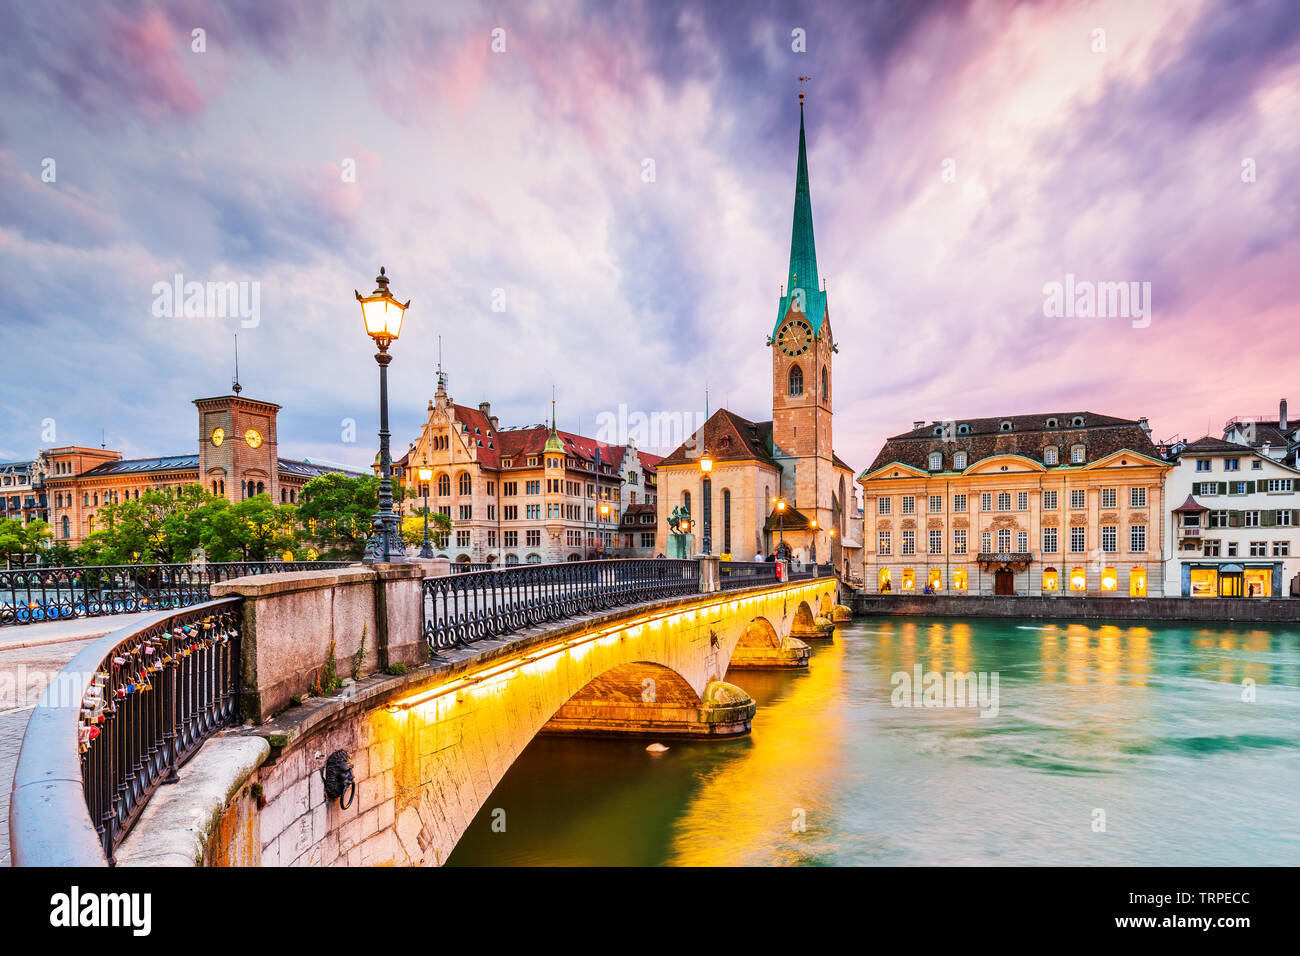 Zurigo, Svizzera. Vista del centro storico della città con la famosa Chiesa di Fraumuenster, sul fiume Limmat. Foto Stock